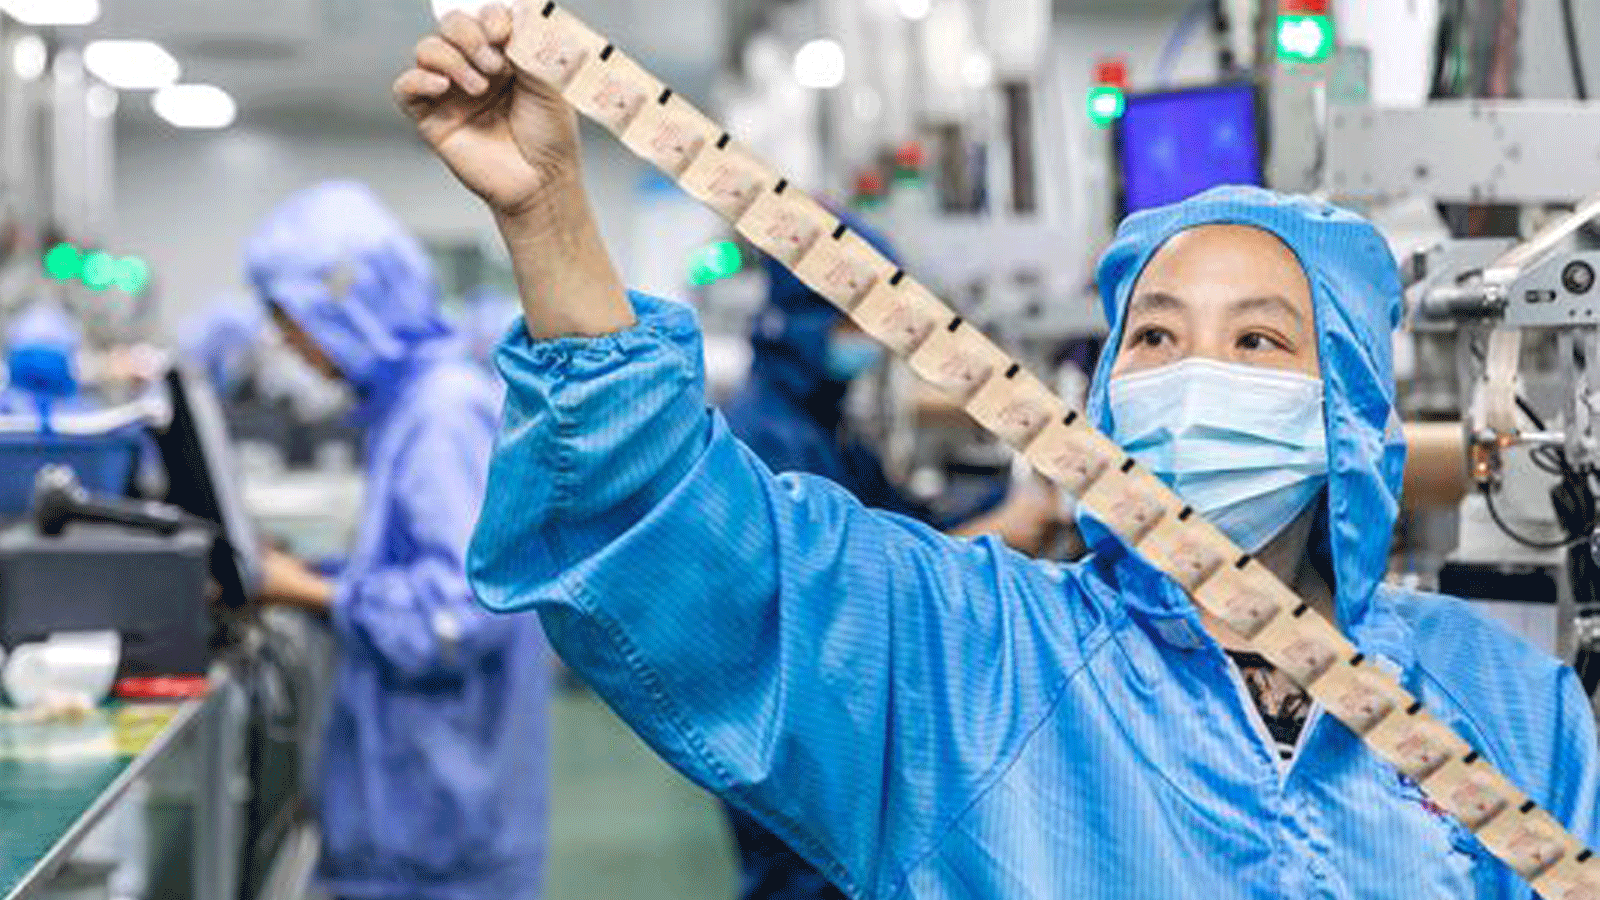 صورة التُقِطَت لعامل يُنتج مزيل الأكسدة المعدّ للتصدير، داخل مصنع في هايان بمقاطعة جيانغسو شرقي الصين، في 5 تموز/يوليو 2021